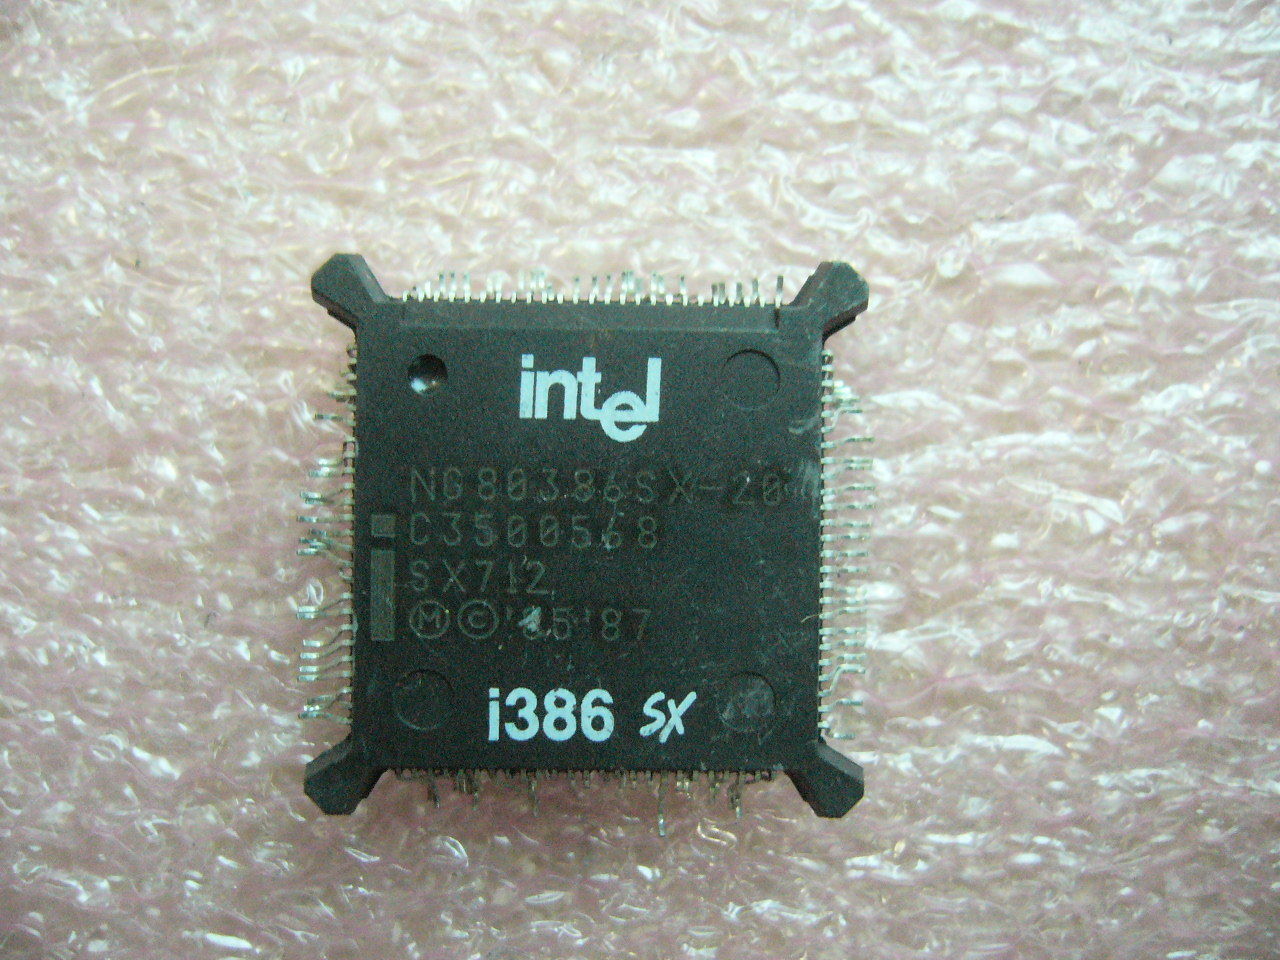 QTY 1x Vintage CPU Intel NG80386SX-20 SX712 i386 SX